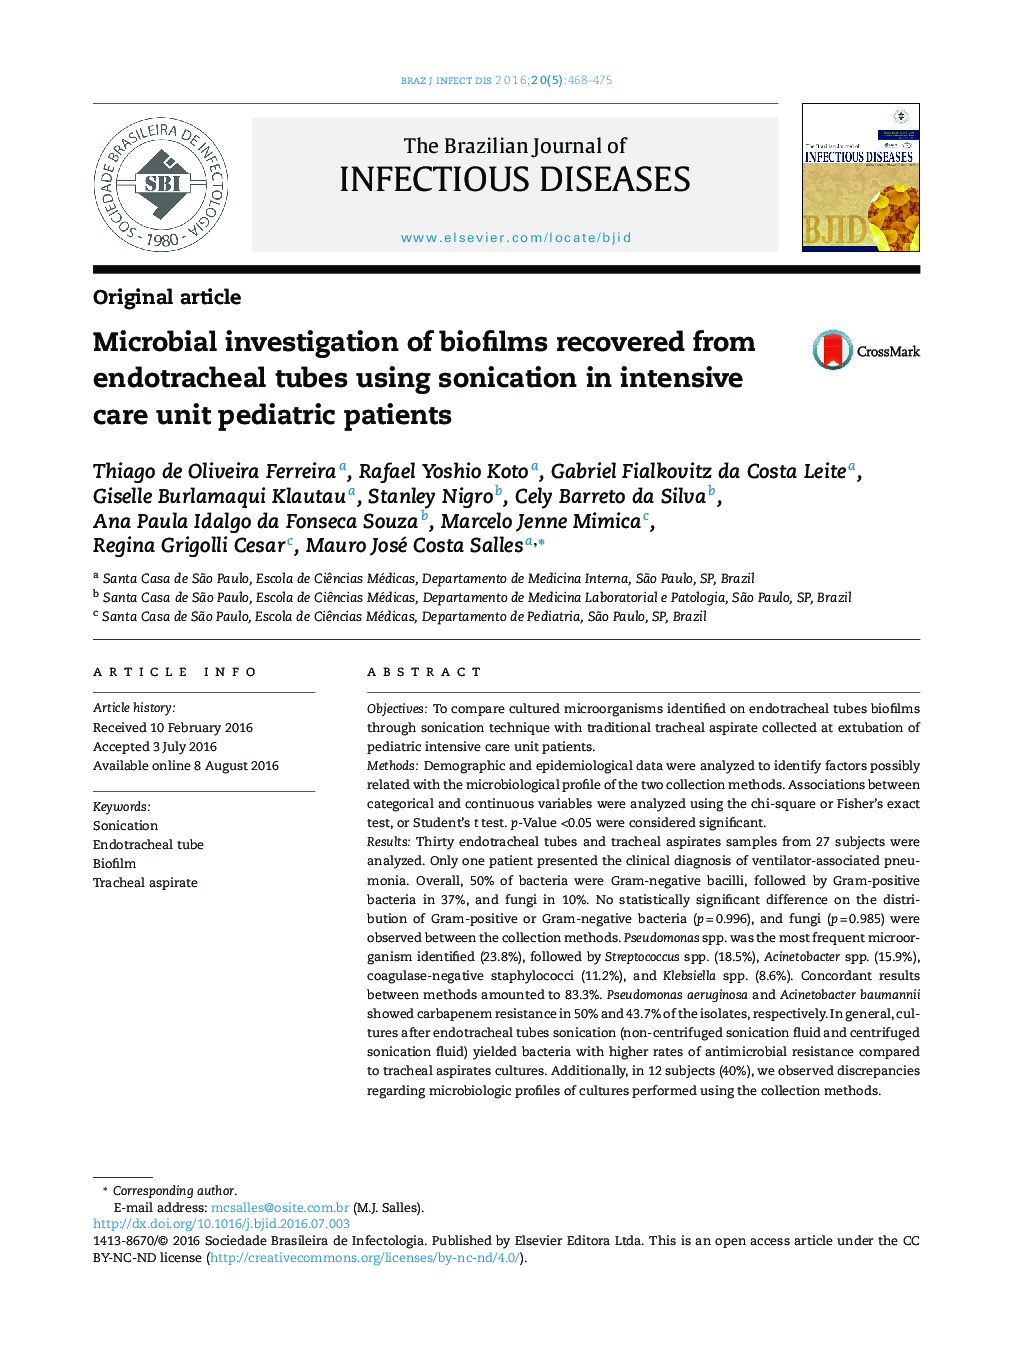 بررسی میکروبی بیوفیلم‌های بدست آمده از لوله های ورودی نای با استفاده از فراصوت در کودکان بیمار بخش مراقبت های ویژه